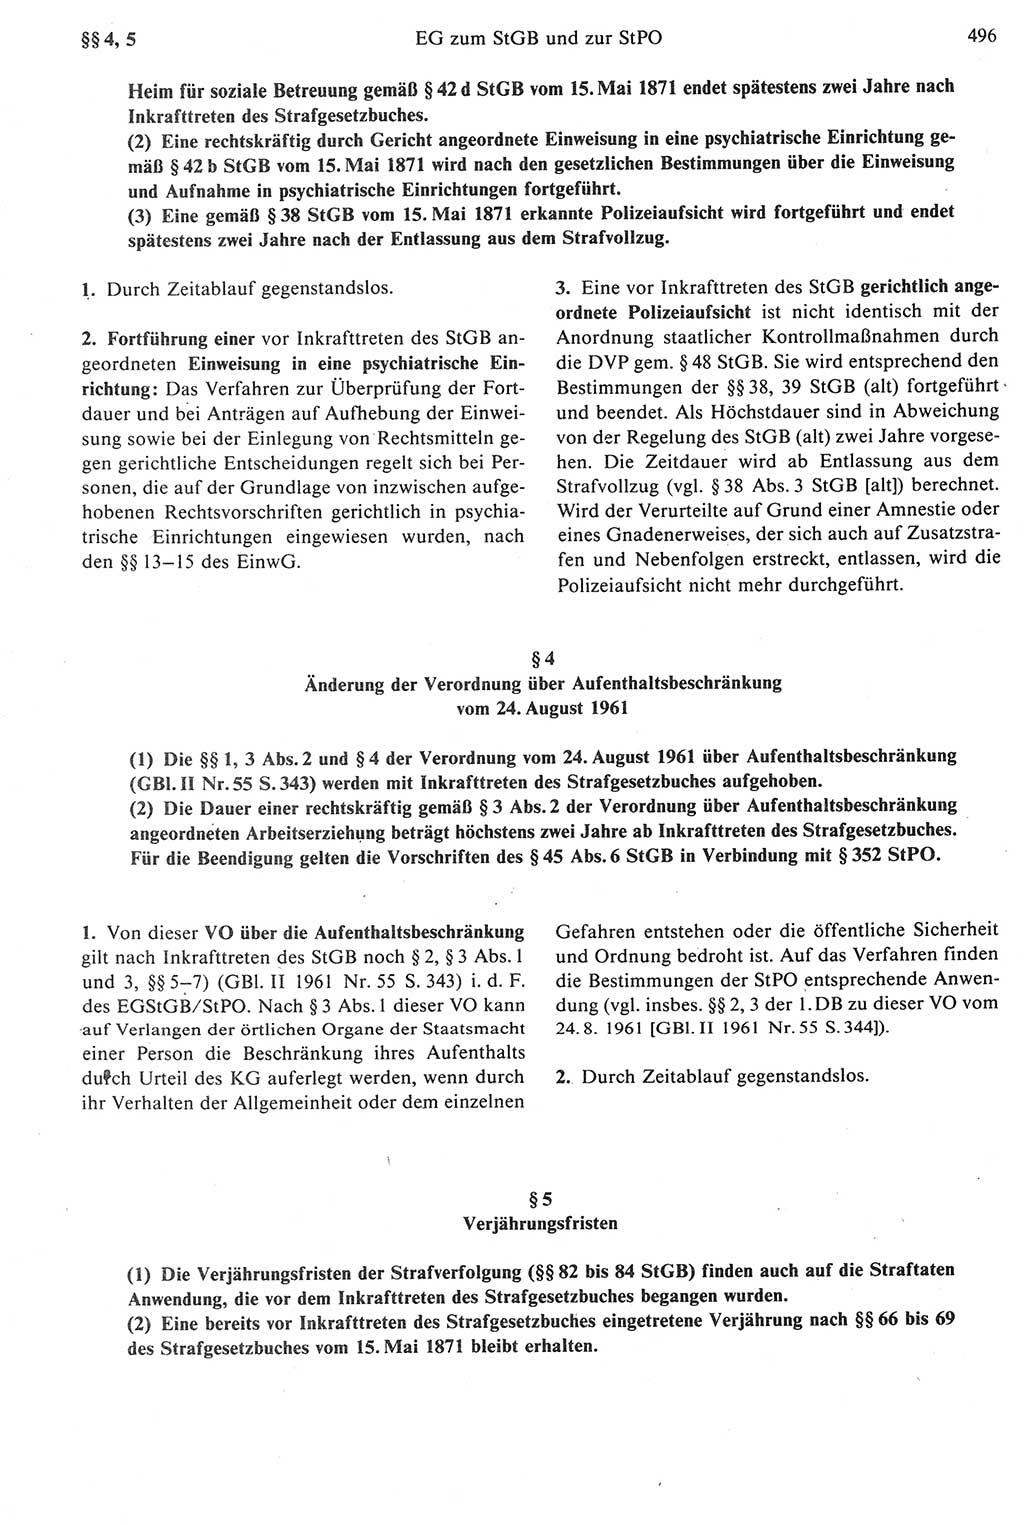 Strafprozeßrecht der DDR [Deutsche Demokratische Republik], Kommentar zur Strafprozeßordnung (StPO) 1987, Seite 496 (Strafprozeßr. DDR Komm. StPO 1987, S. 496)